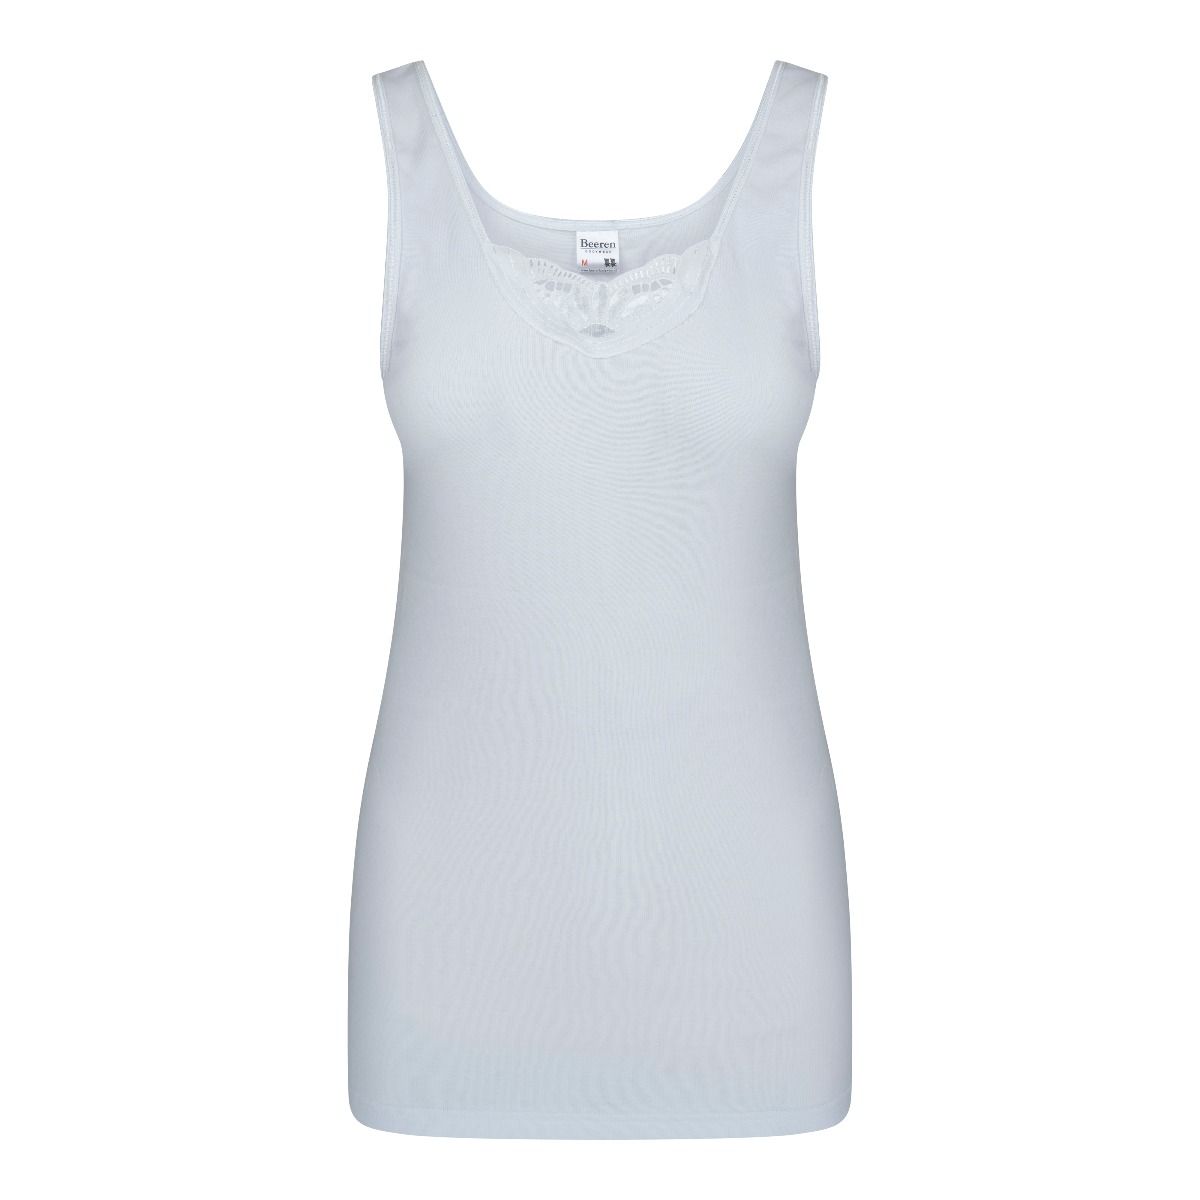 hoek Aanhankelijk school Dames hemd Brenda wit-Beeren dames hemden online kopen.